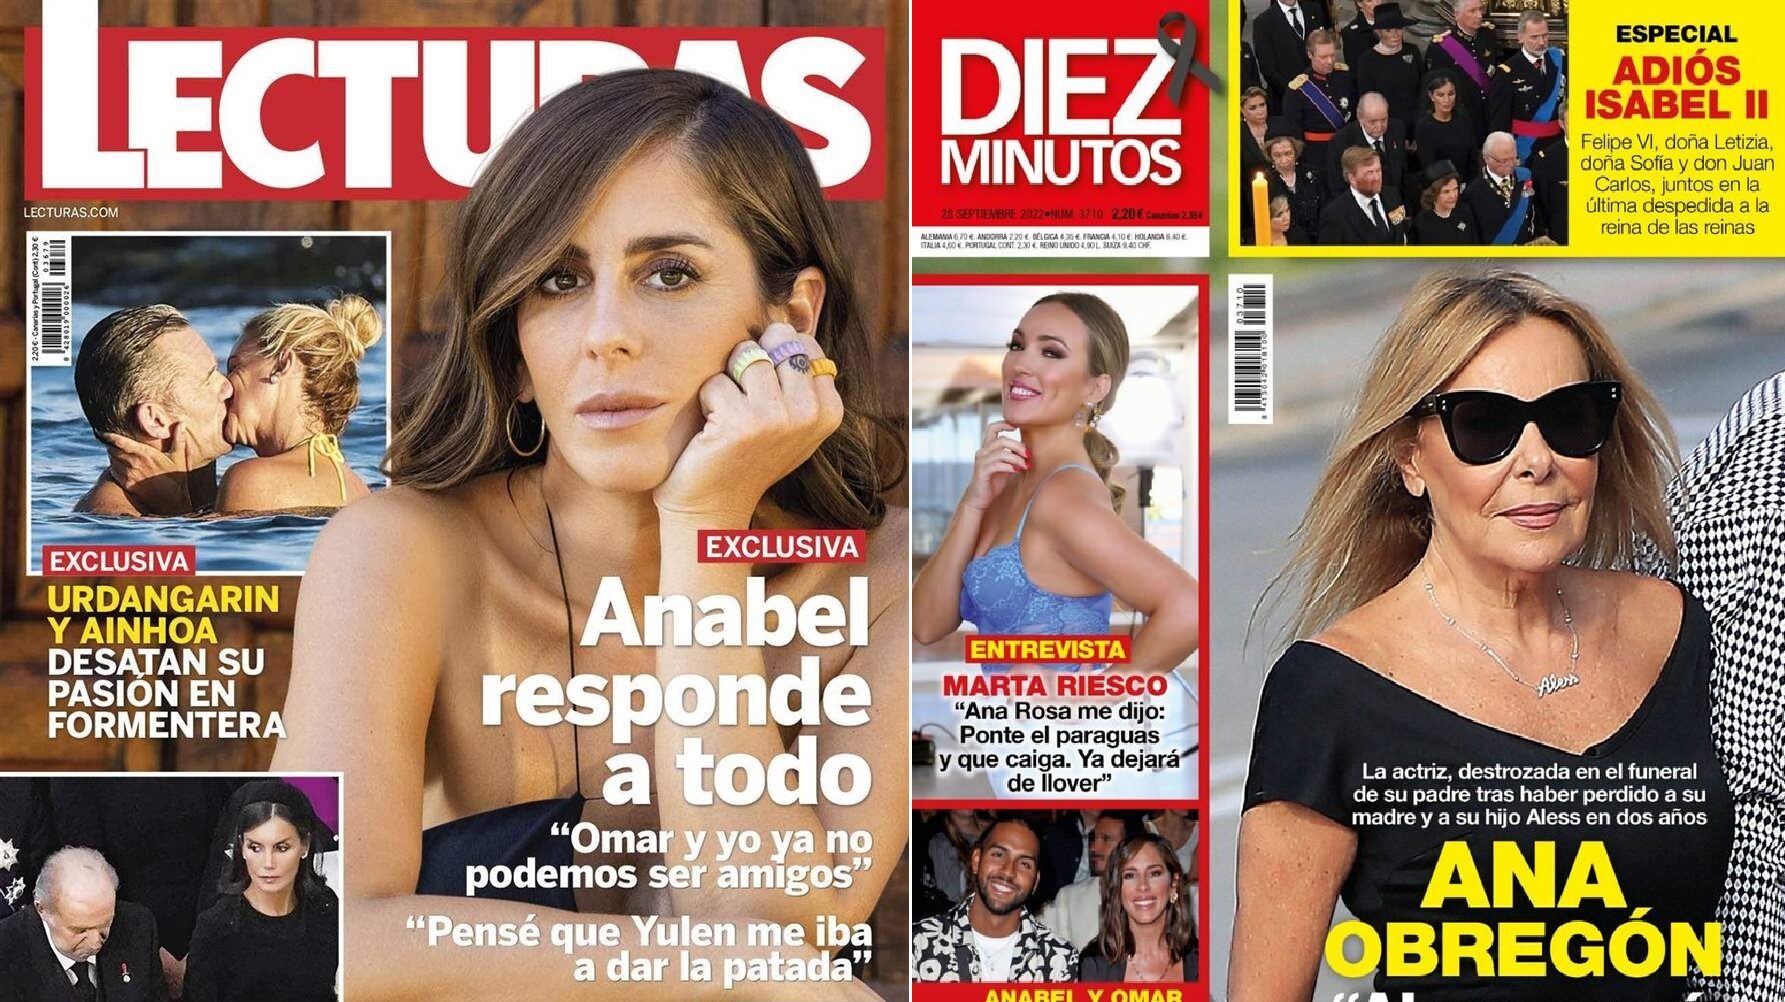 Las tórridas fotos de Iñaki Urdangarin y Ainhoa, el nuevo novio de Susanna Griso y el despido de Rocío Carrasco, portadas de las revistas